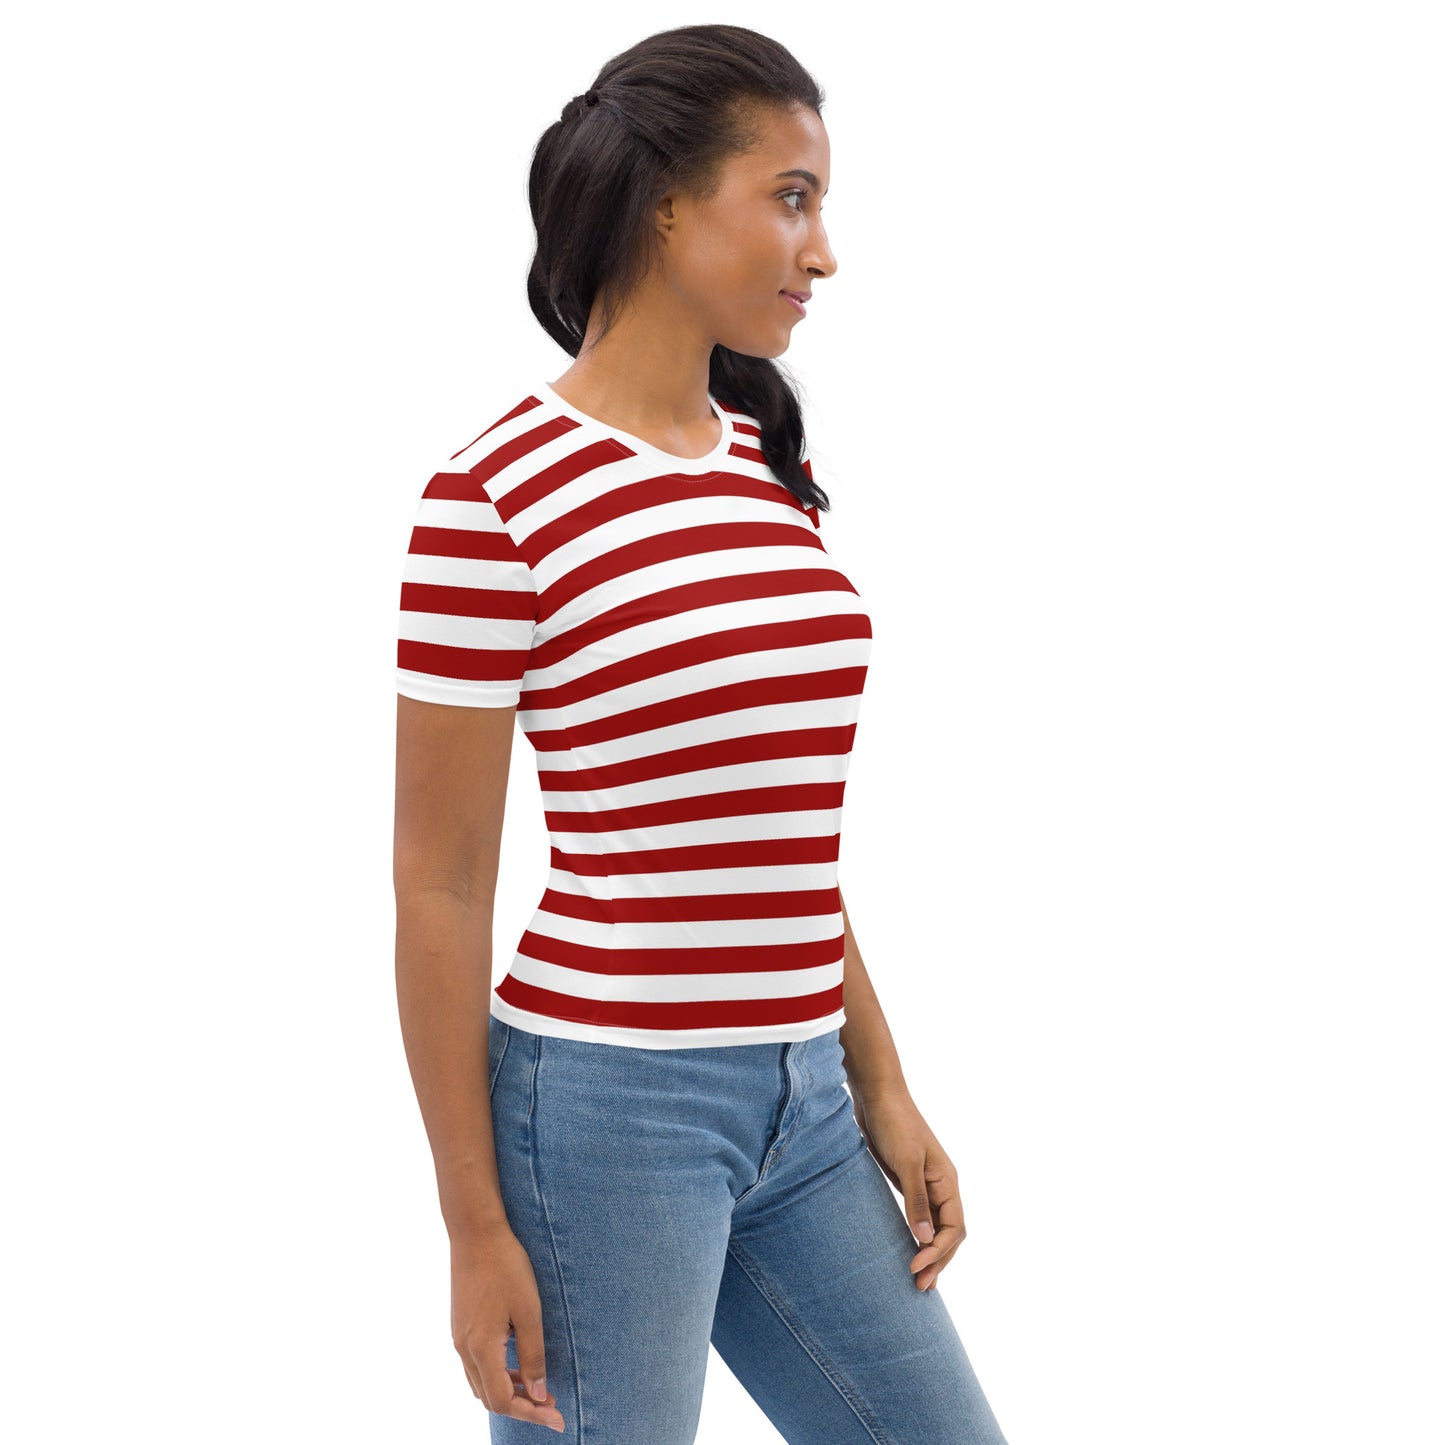 Camiseta de rayas rojas y blancas para mujer